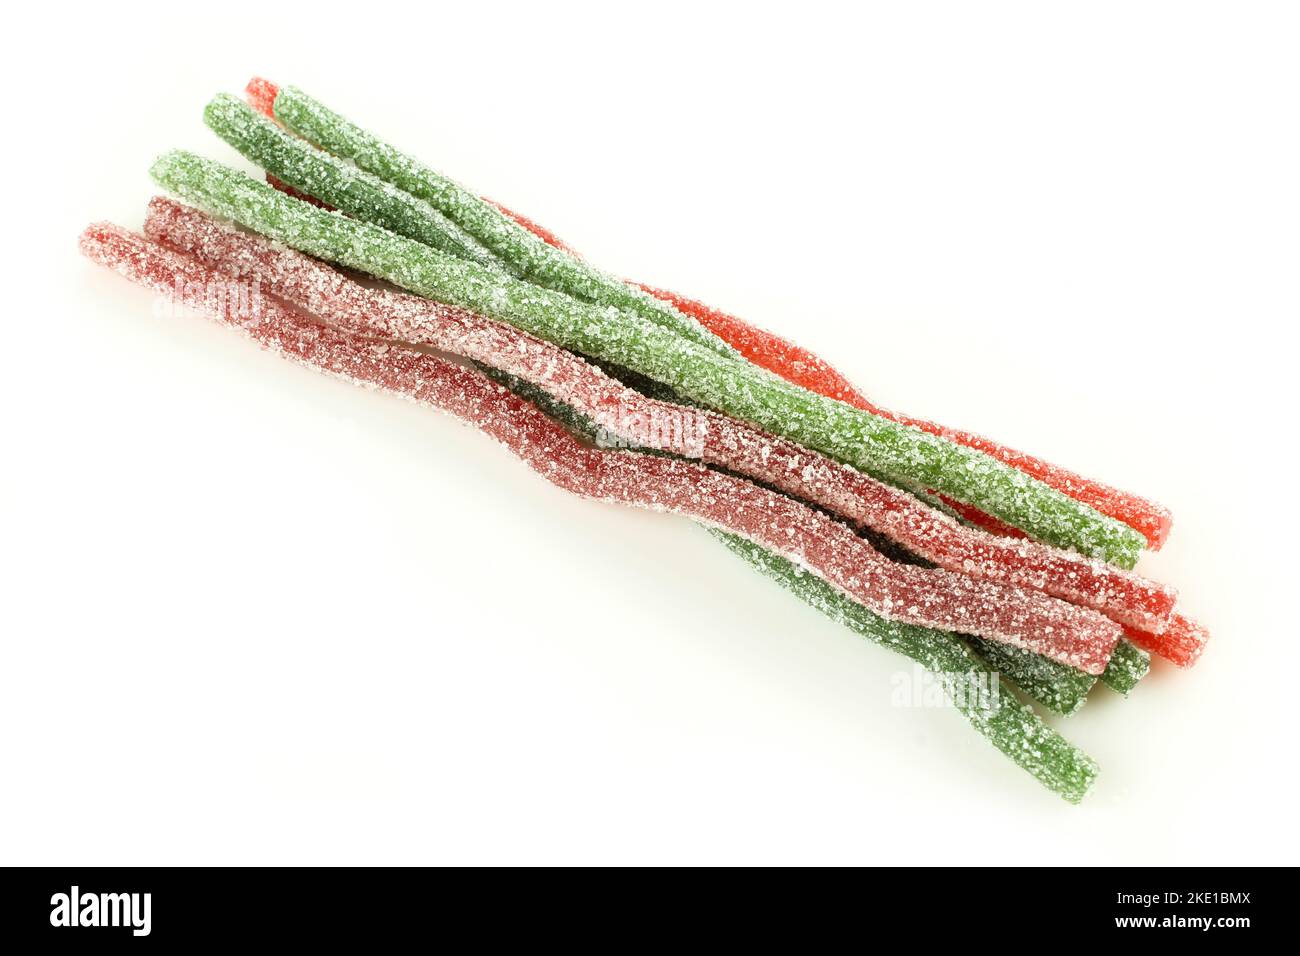 Gruppe von roten, grünen, kauen Würmern auf weißem Hintergrund isoliert. Zuckerbeschichtete saure Süßigkeiten für Kinder Stockfoto